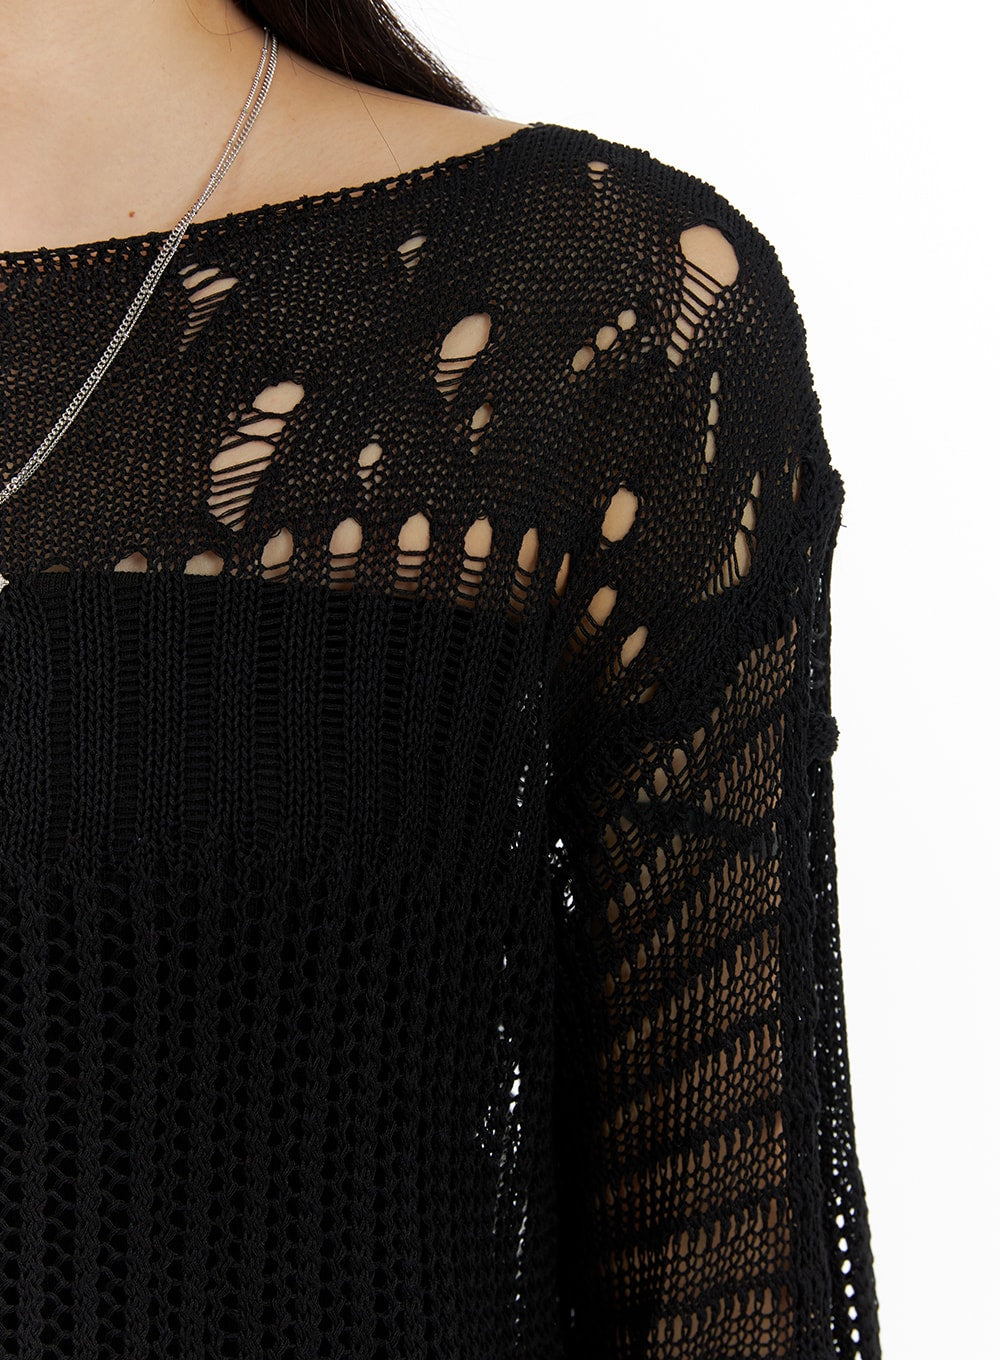 Dark Grunge Damaged Mesh Knit Top CF428 - Korean Women's Fashion 